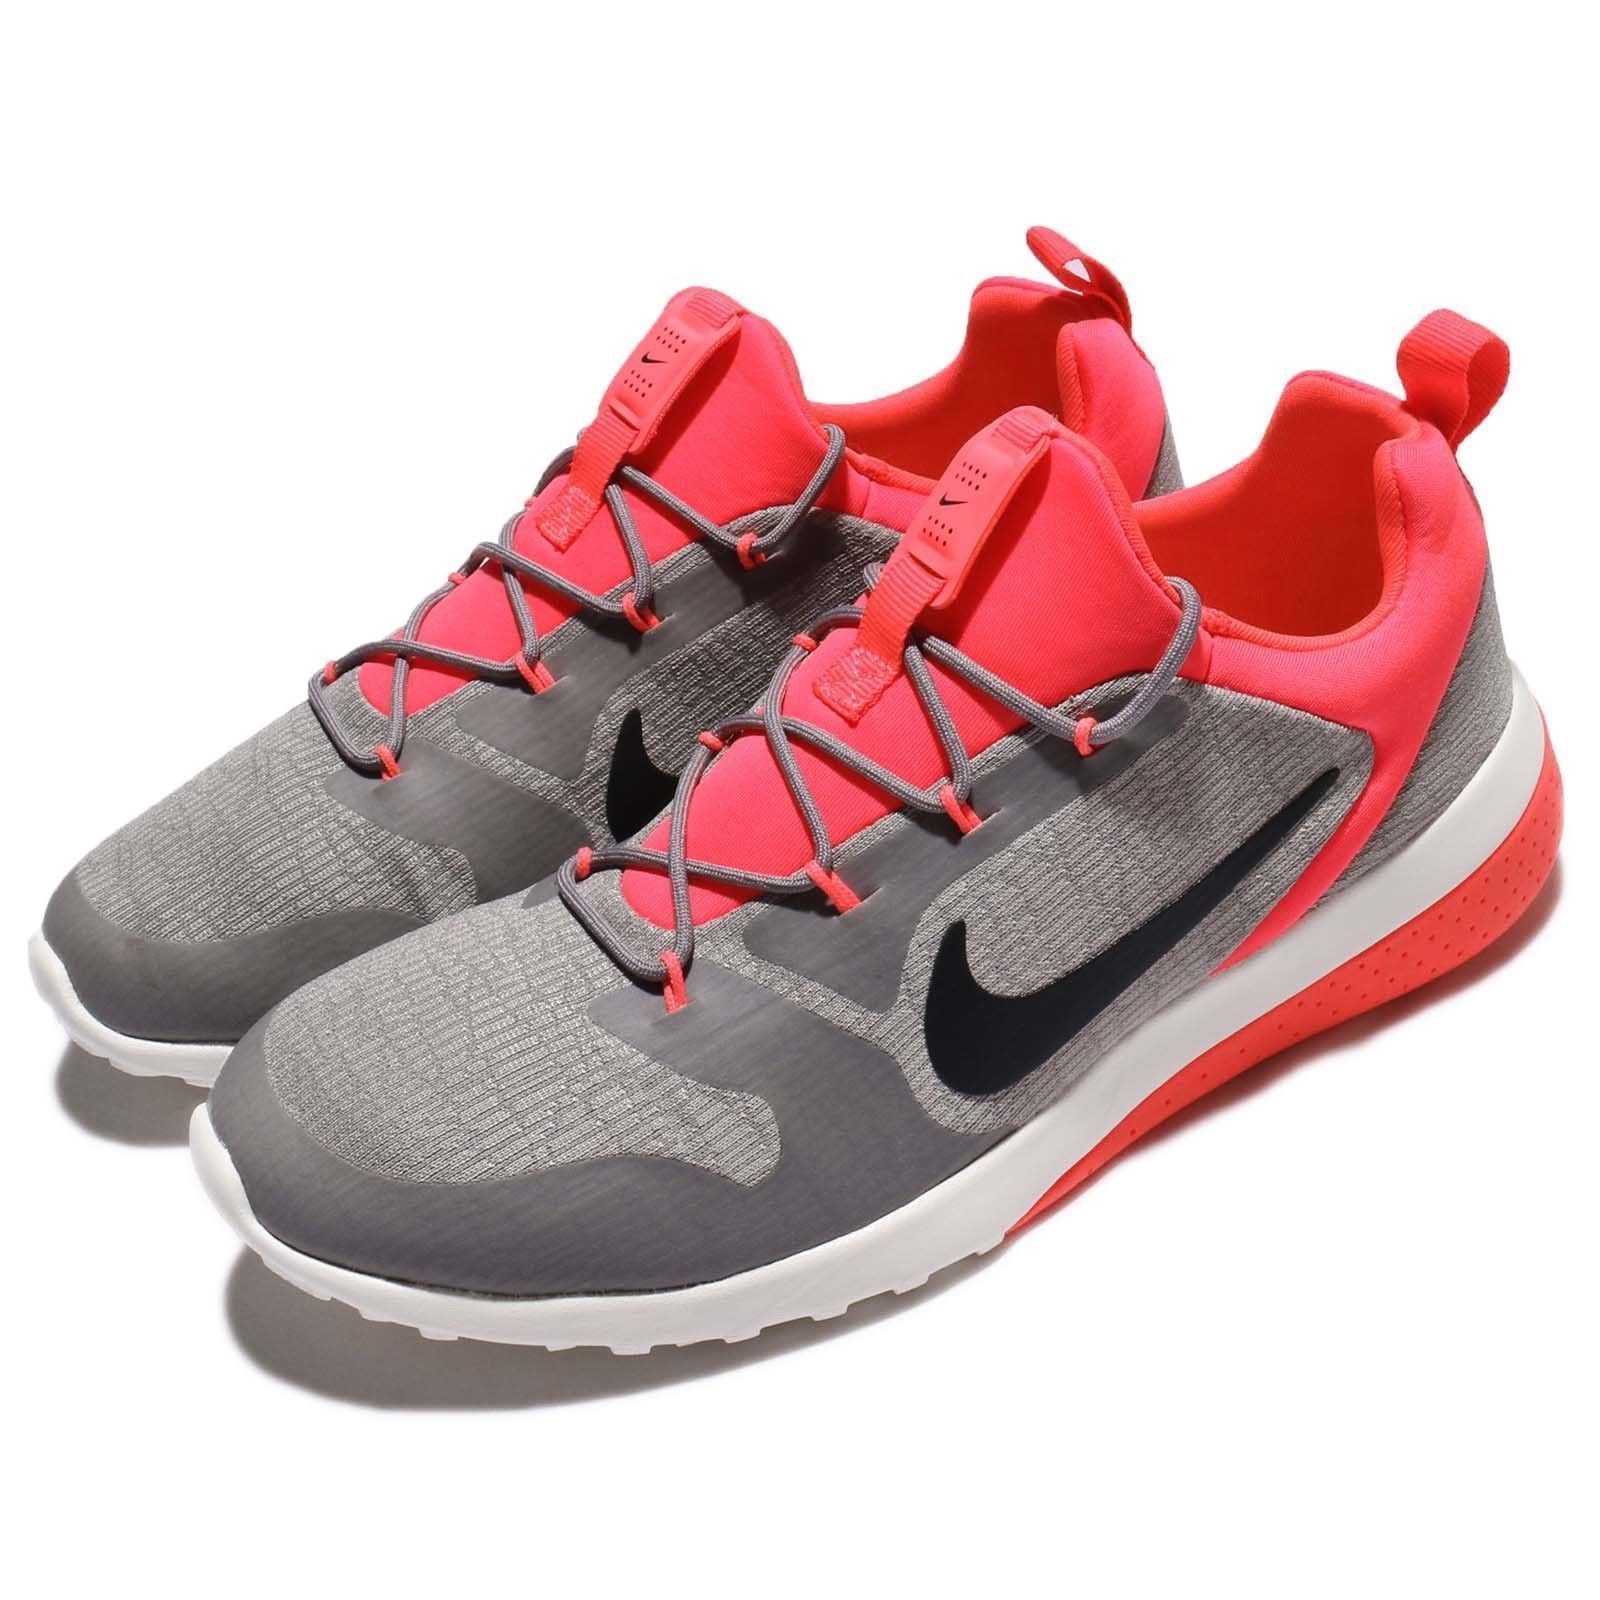 Nike Men's Ck Racer Running Shoe - 11.5M - Dust / Black / Cobblestone ...